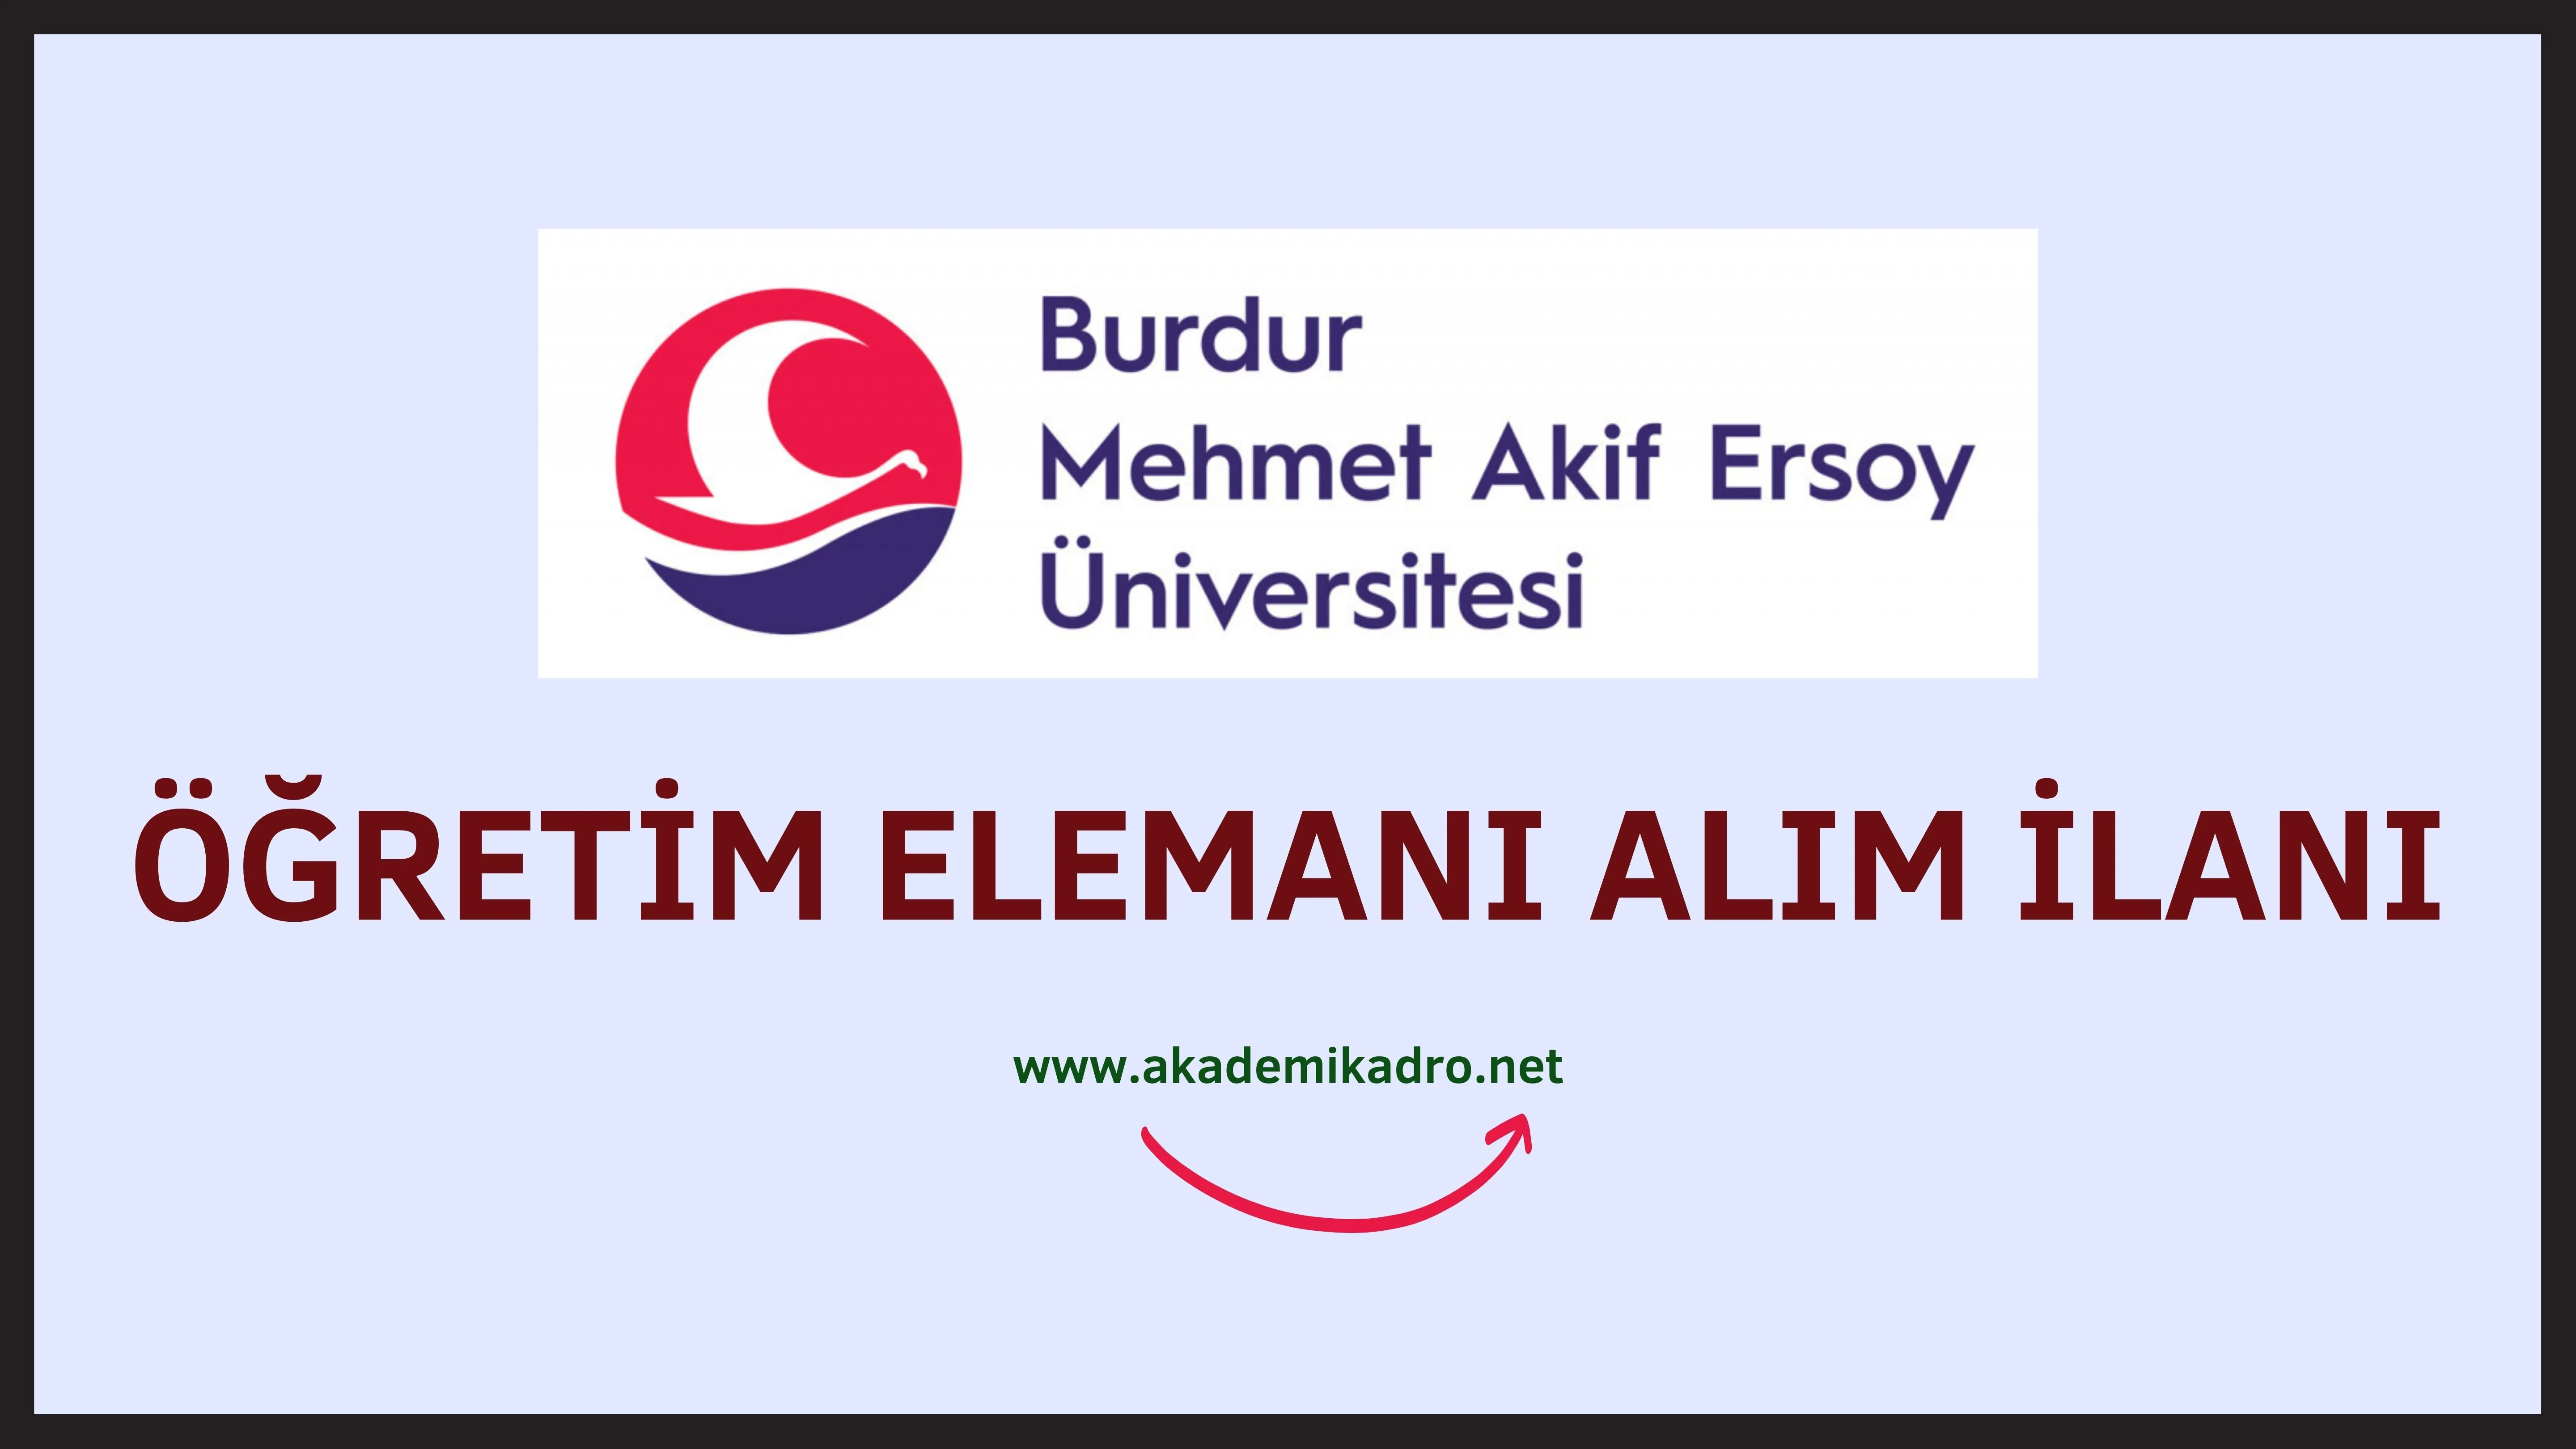 Burdur Mehmet Akif Ersoy Üniversitesi 6 Öğretim görevlisi ve 4 araştırma görevlisi alacaktır. Son başvuru tarihi 20 Aralık 2023